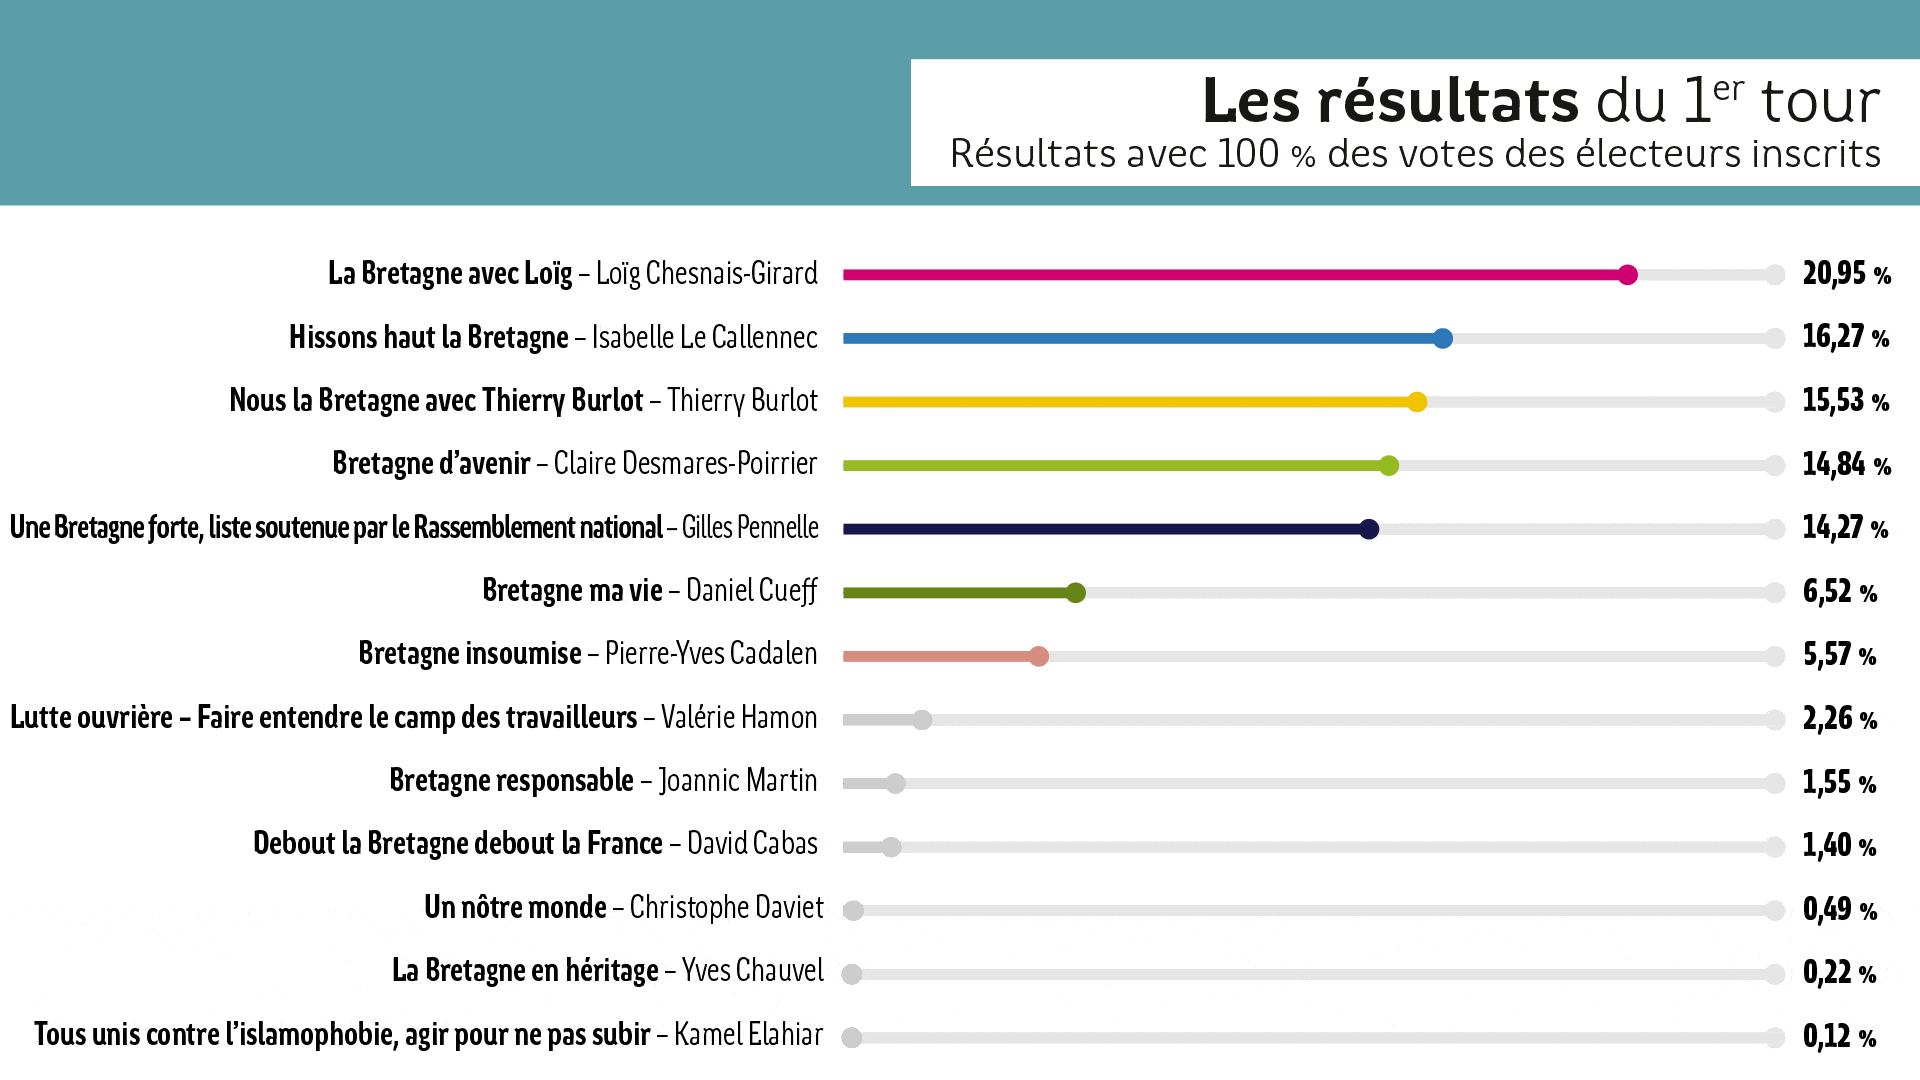 histogramme des résultats du 1er tour des élections regionales 2021 avec 100% des votes des électeurs inscrits